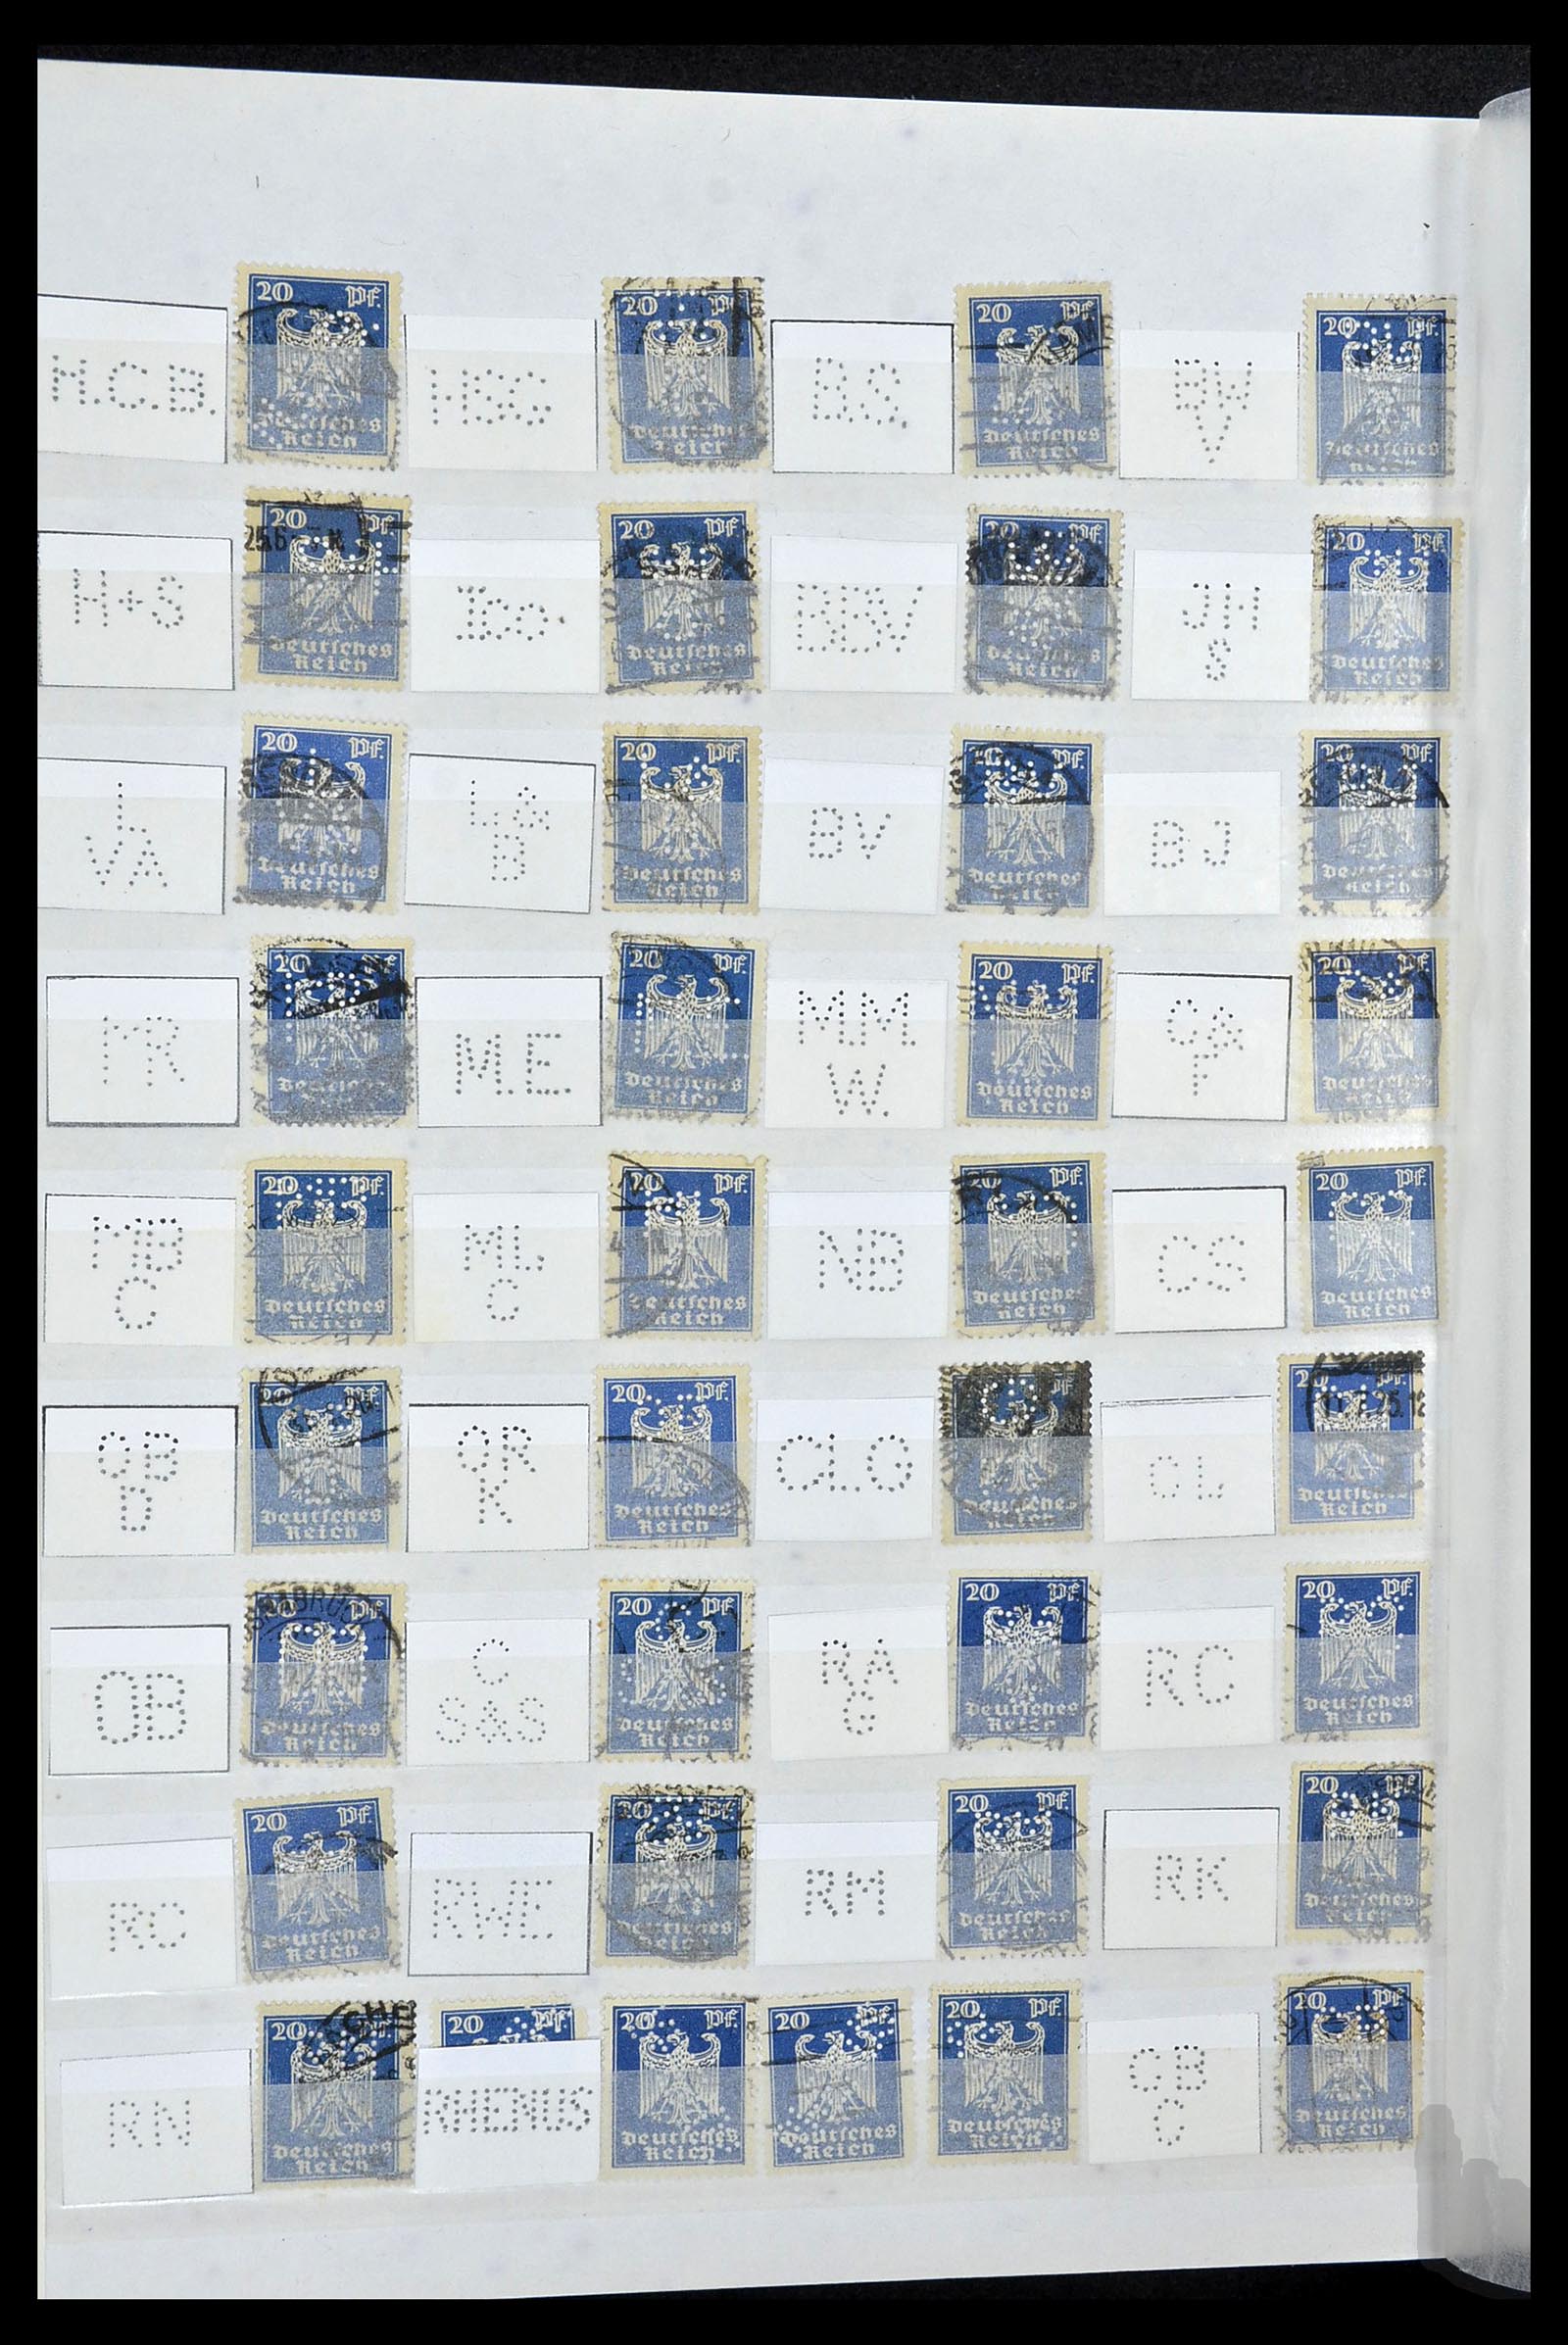 34071 034 - Stamp collection 34071 German Reich perfins 1923-1930.